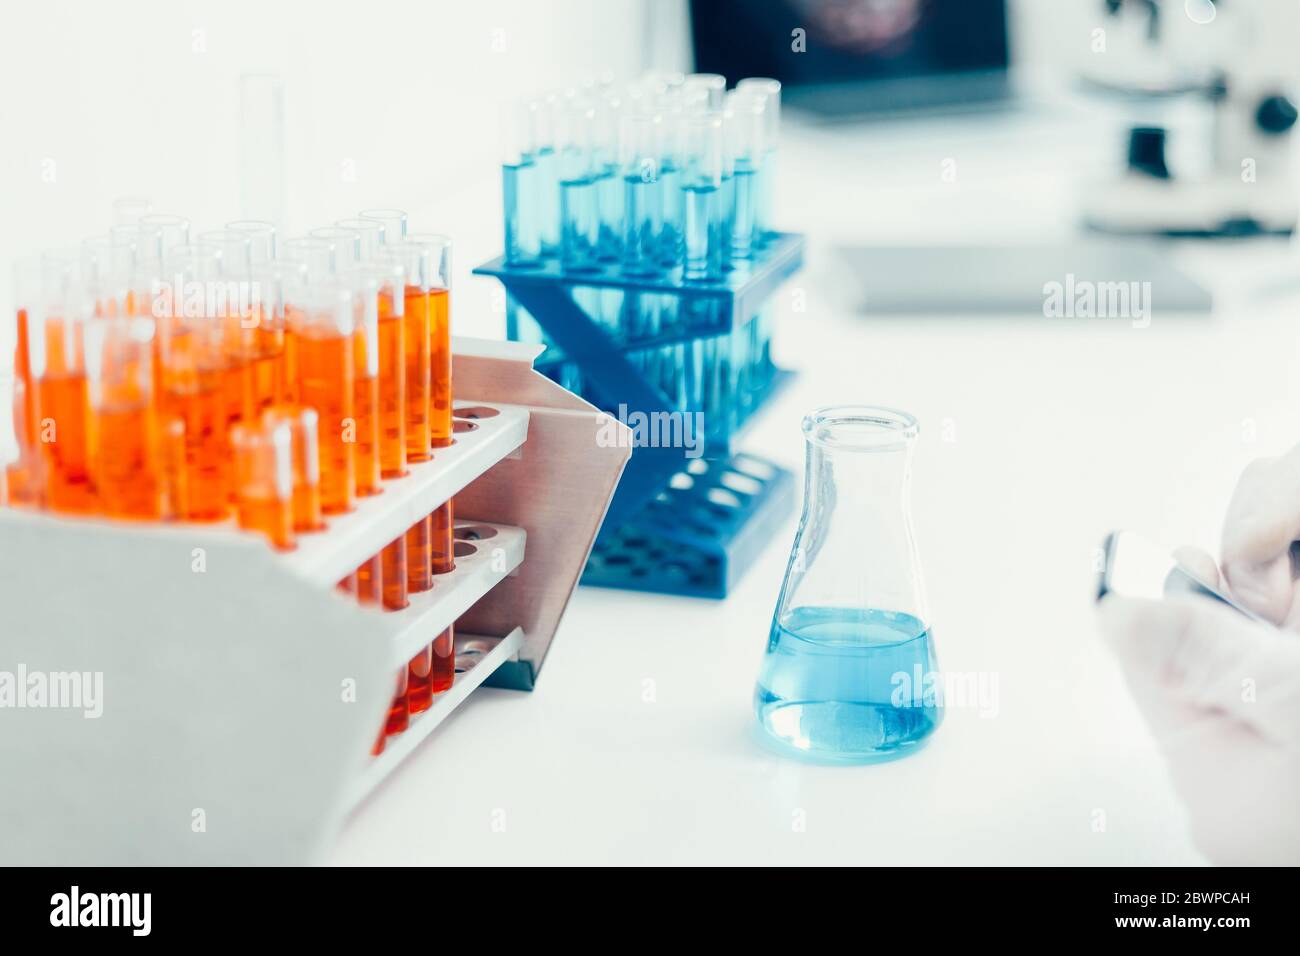 Behälter Mit Urinprobe Auf Tabelle Im Labor, Raum Für Text Stockfoto - Bild  von analyse, mikrobiologie: 137330804